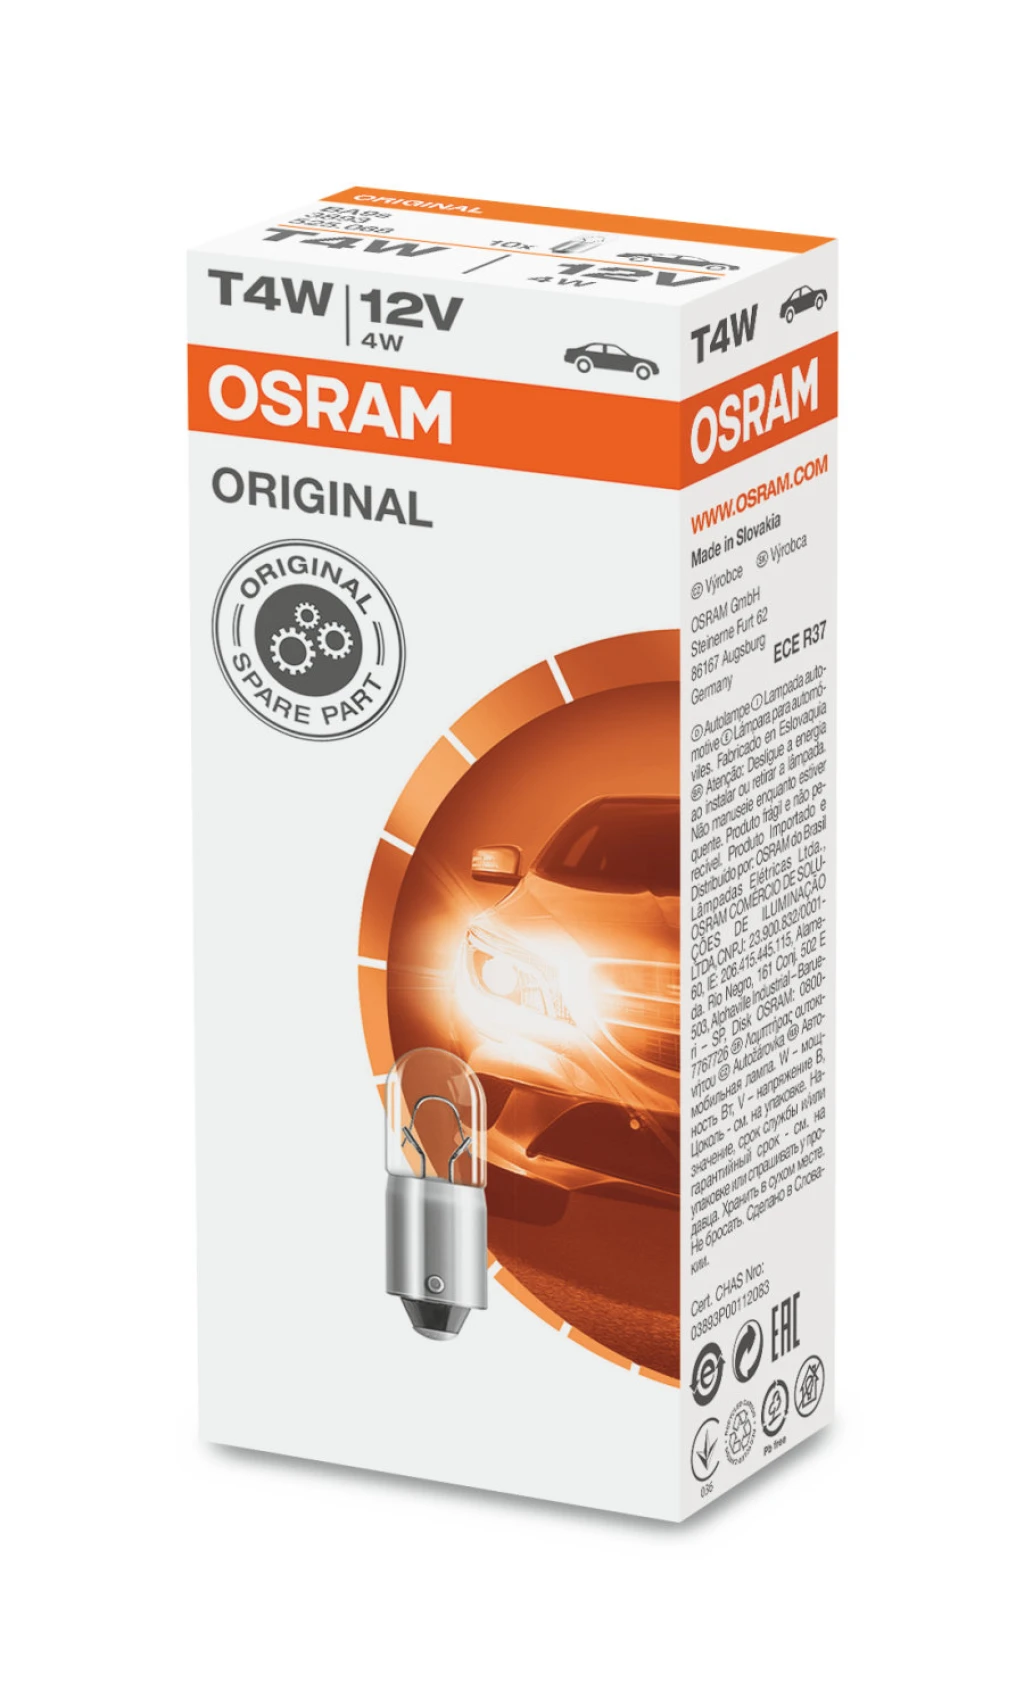 Лампа подсветки Osram Original T4W (BA9s) 12В 4Вт 1 шт